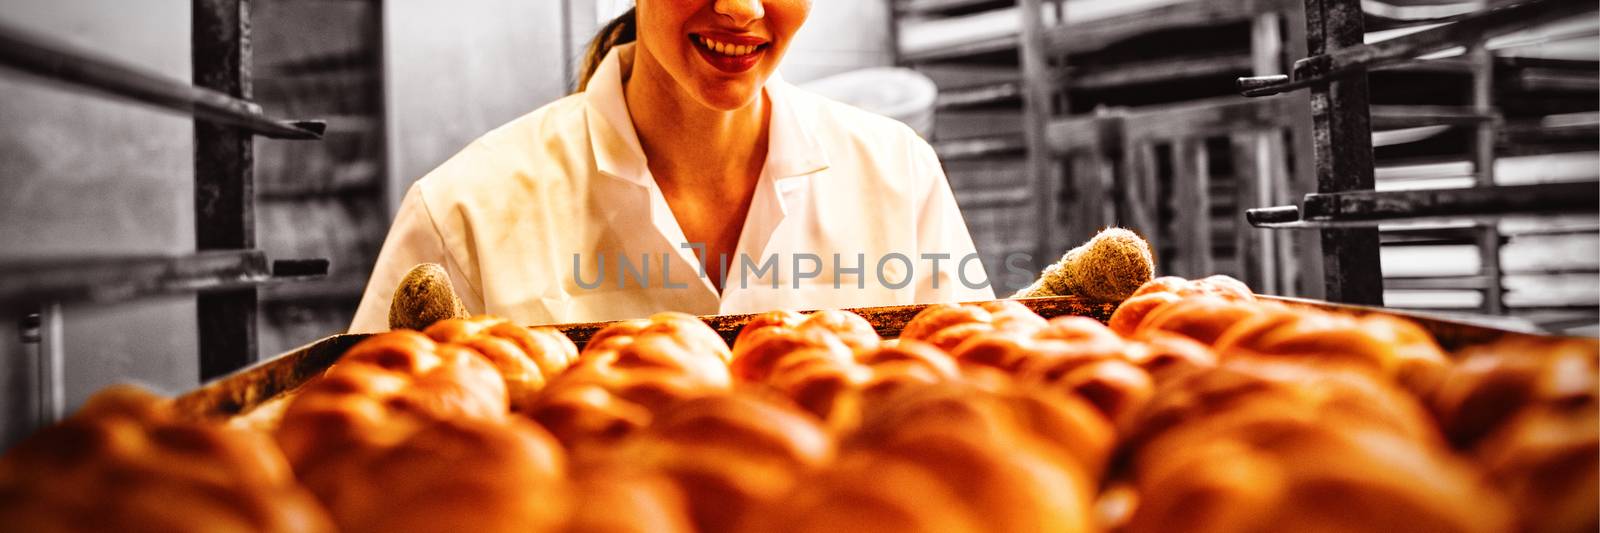 Female baker working in bakery shop